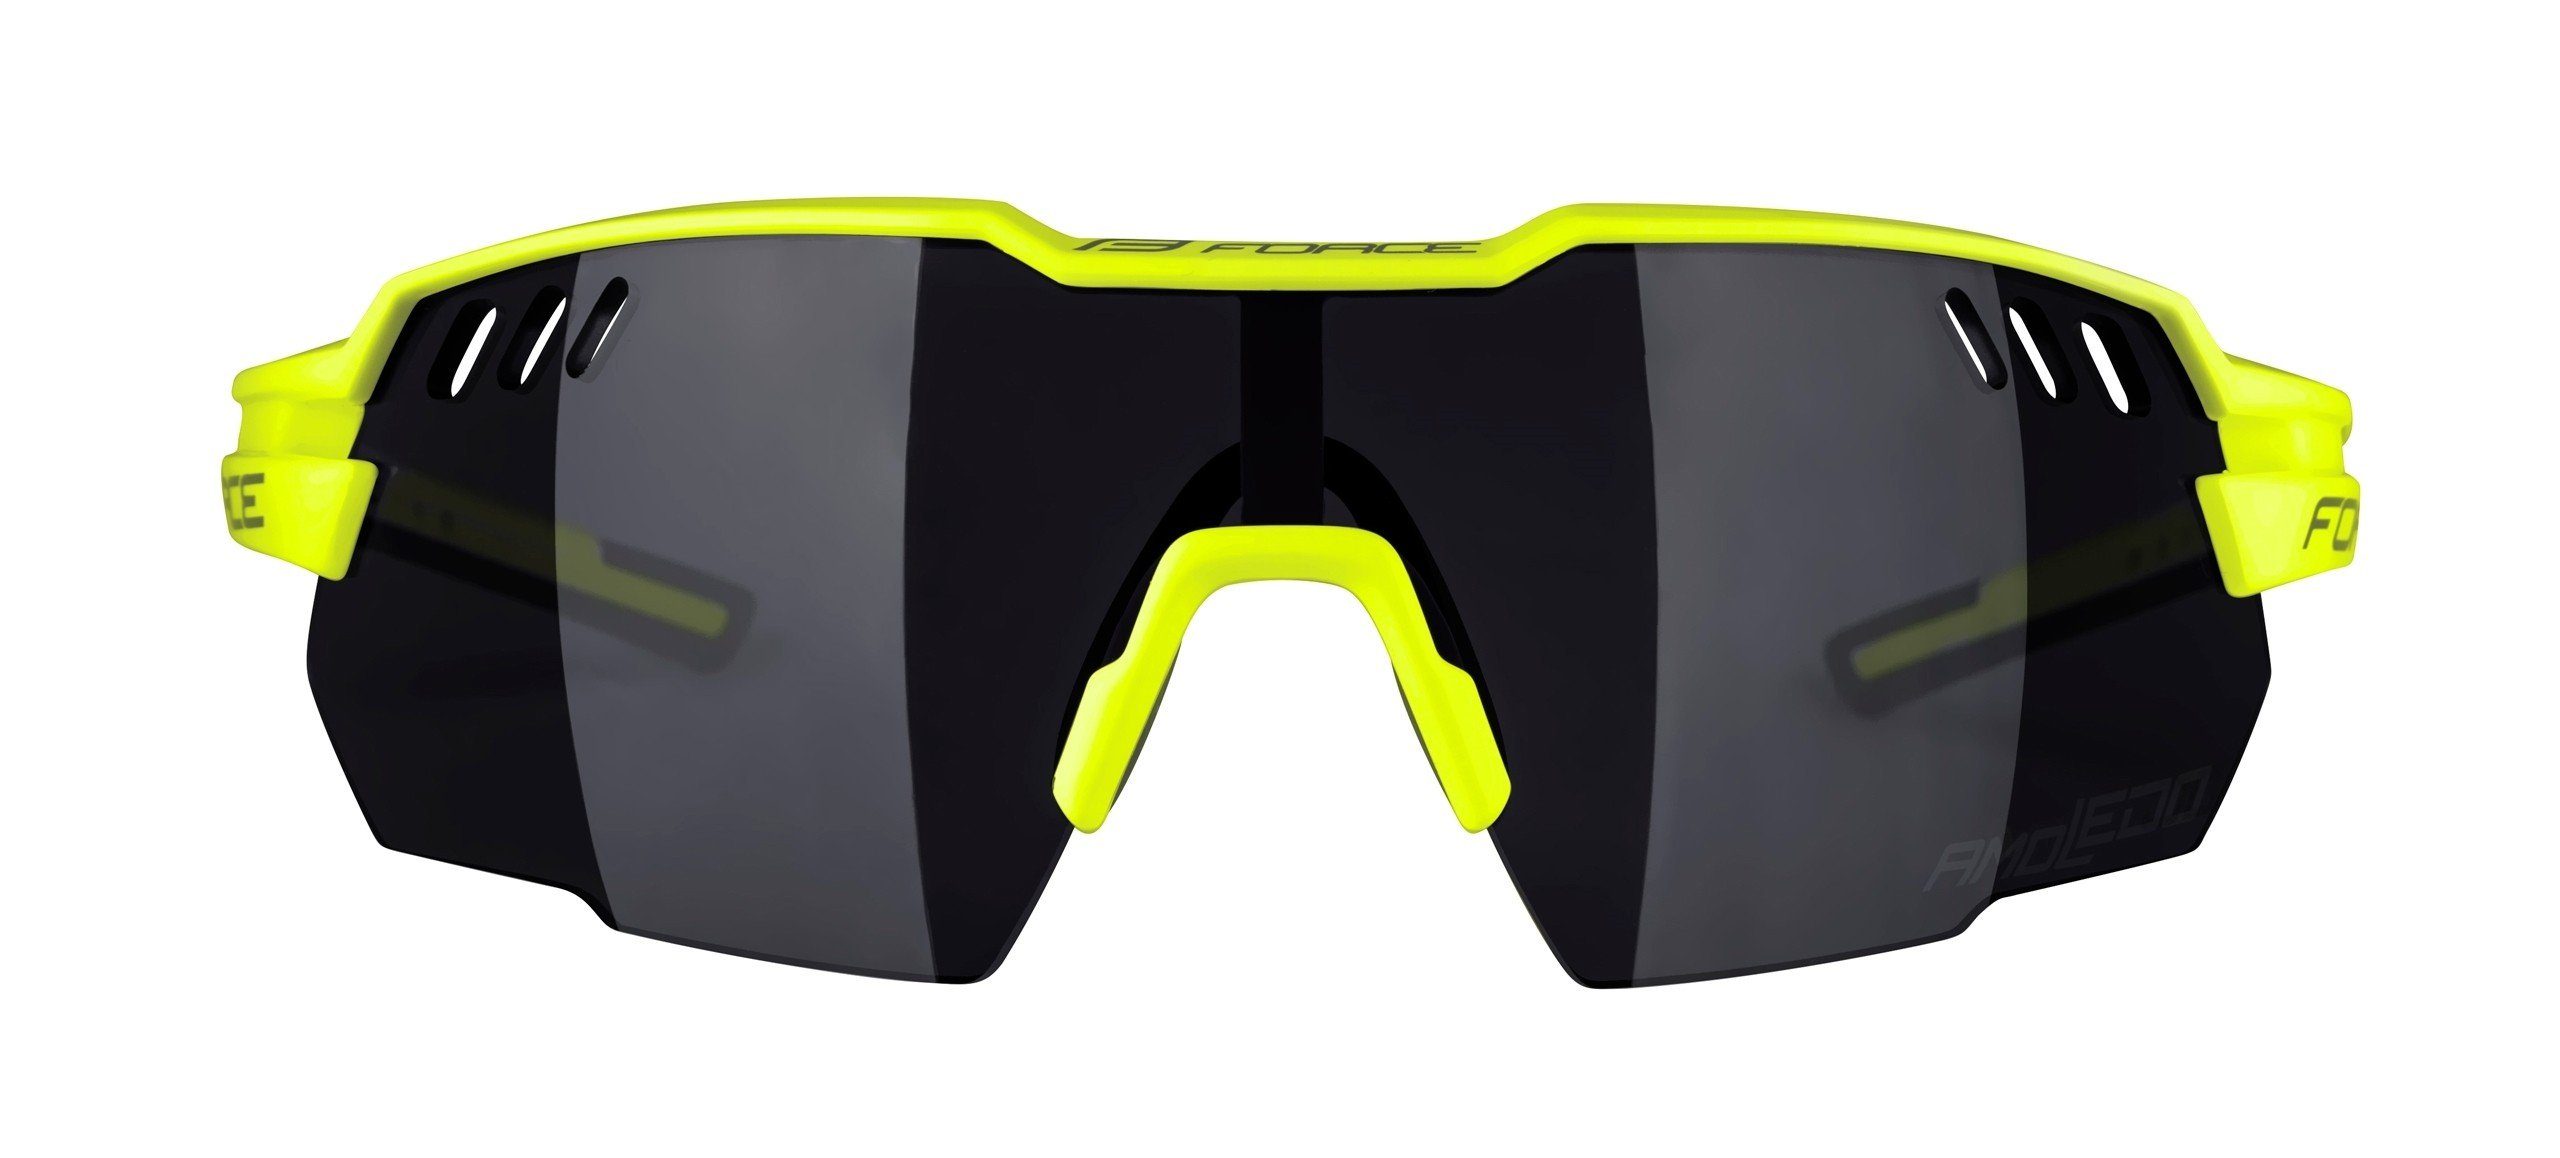 Fahrradbrille FORCE verspiegelt gelb, schwarz Sonnenbrille AMOLEDO FORCE